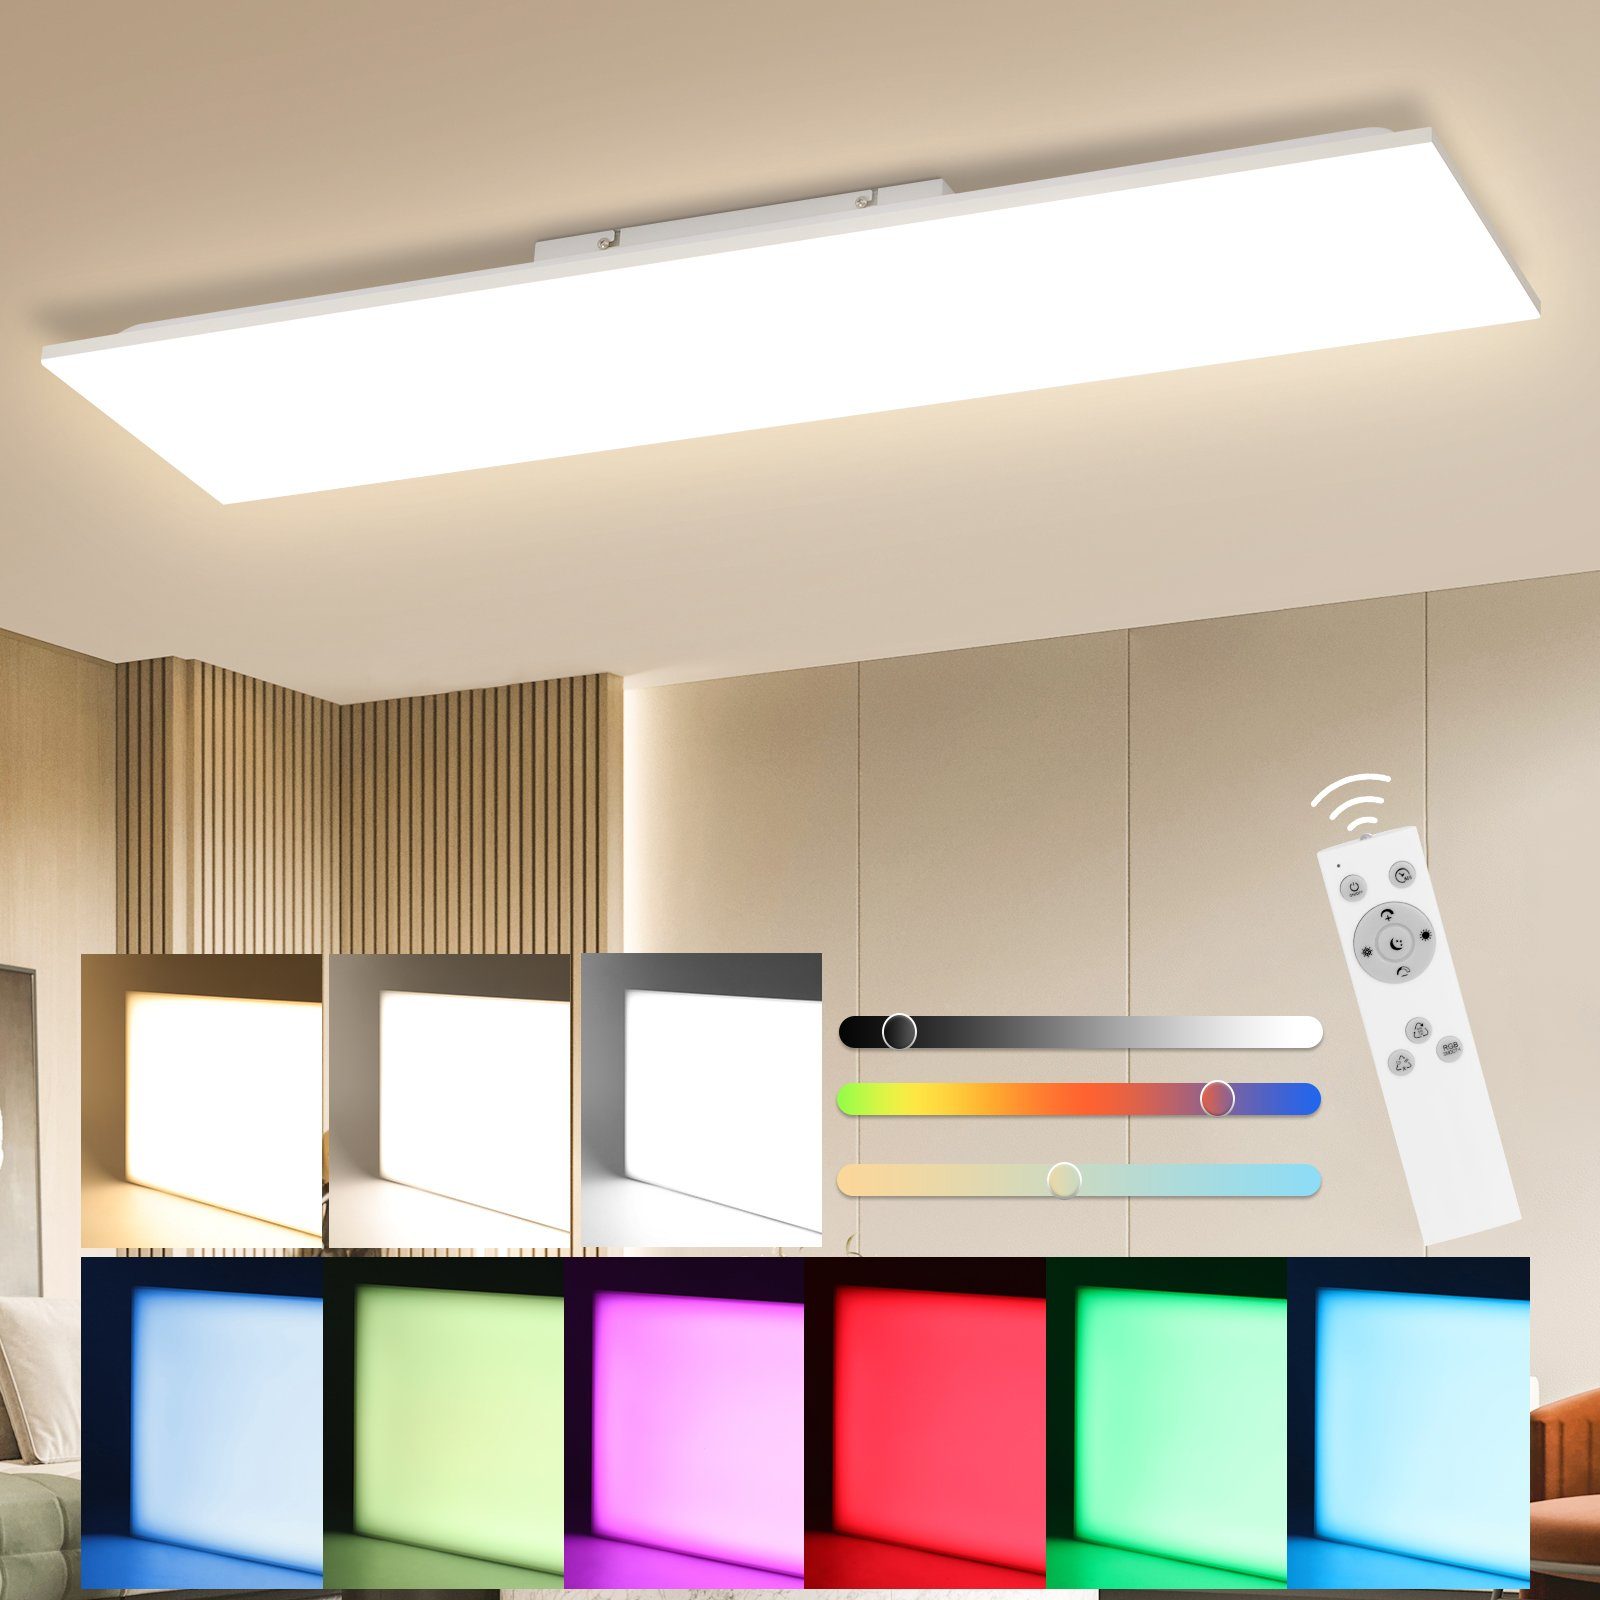 Nettlife Deckenleuchten LED fest und Farbwechsel integriert, Energiesparen, RGB, Nachtlichtmodus, Flimmerfrei, Schlafzimmer Dimmbar LED Augenschutz, Tageslichtweiß, Eckig Deckenlampe Weiß, RGB Dimmbar, Speicherfunktion Fernbedienung